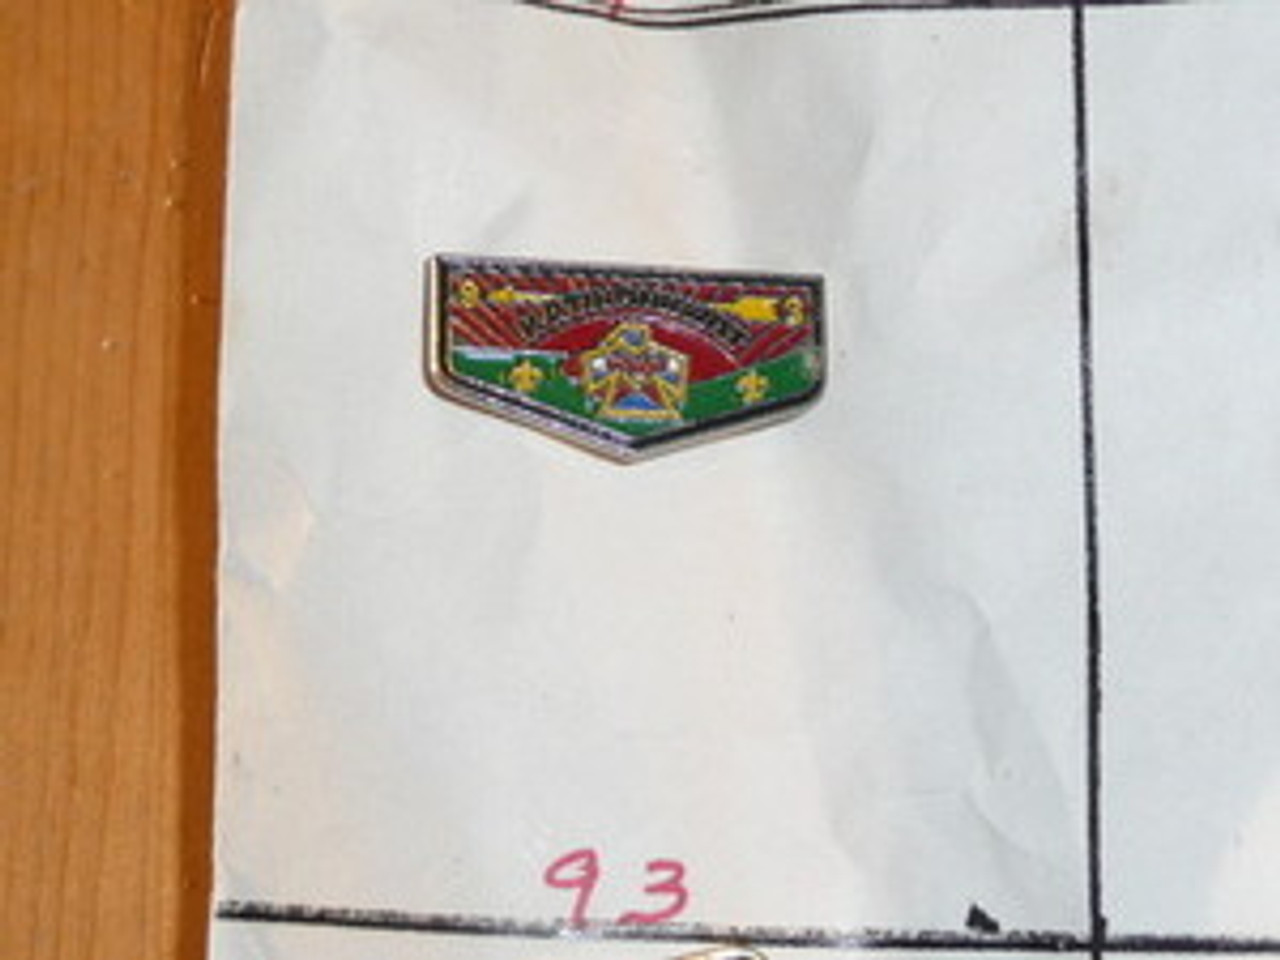 Katininkwat O.A. Lodge #93 Flap Shaped Pin - Scout